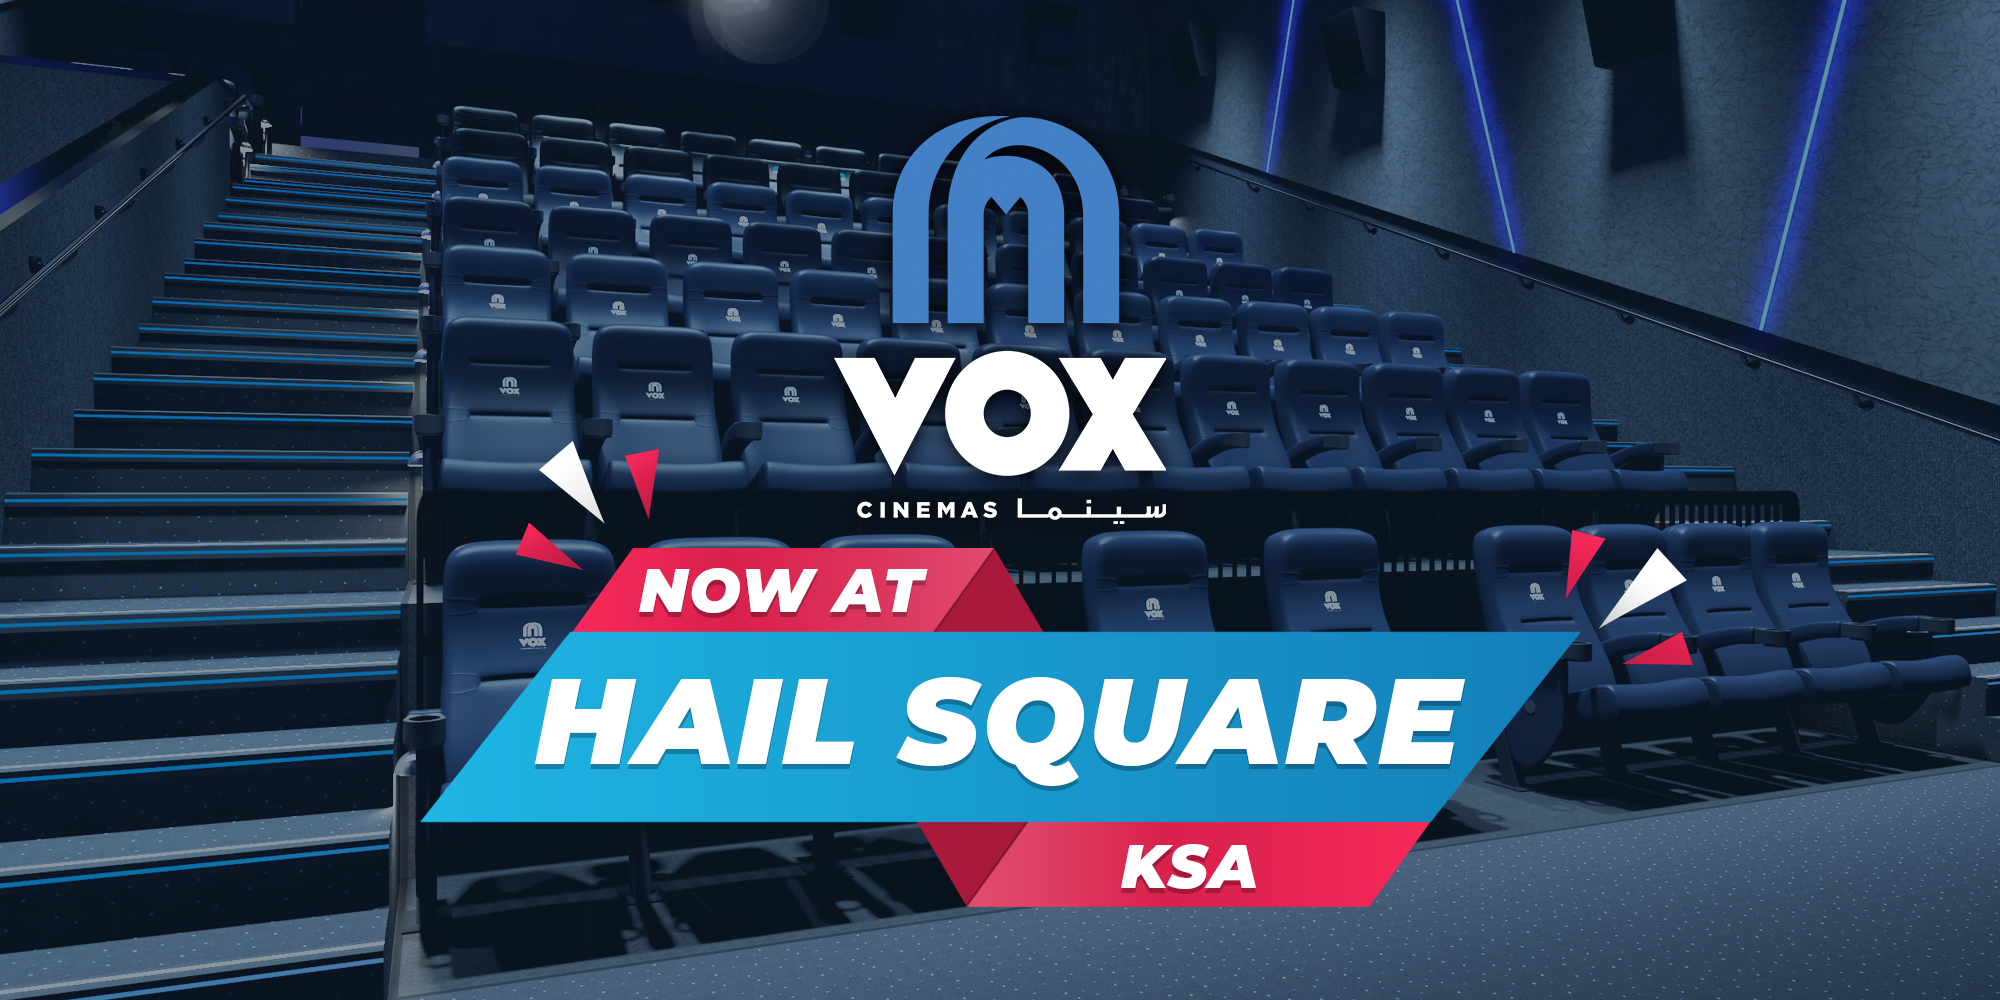 Vox cinema hail